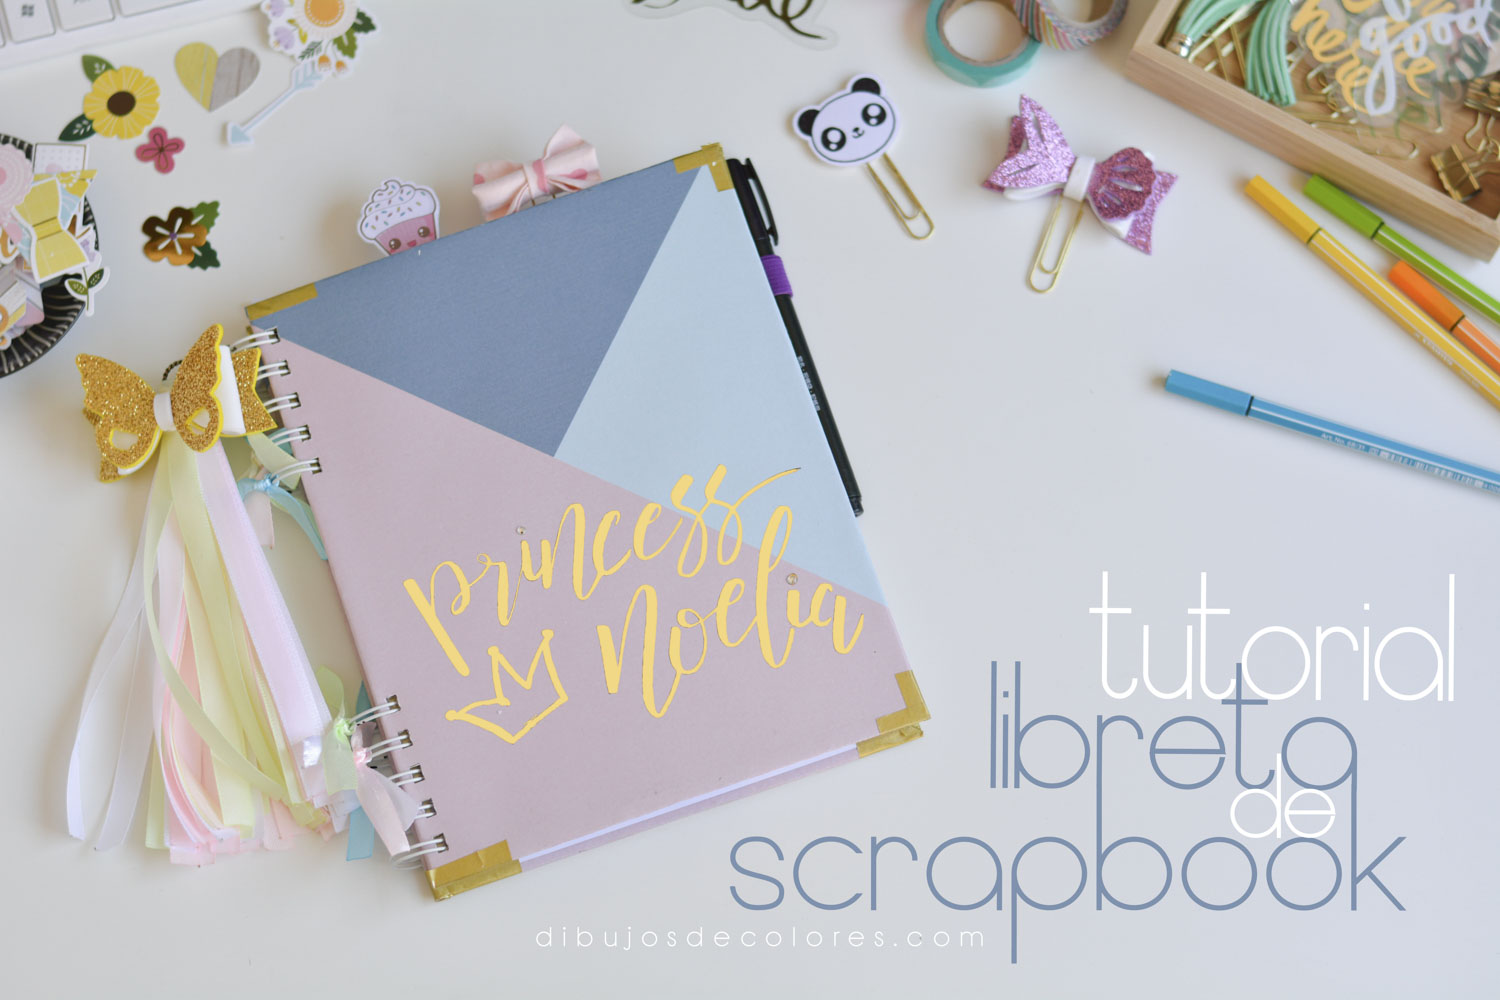 Tutorial libreta de scrapbook - Dibujos de Colores